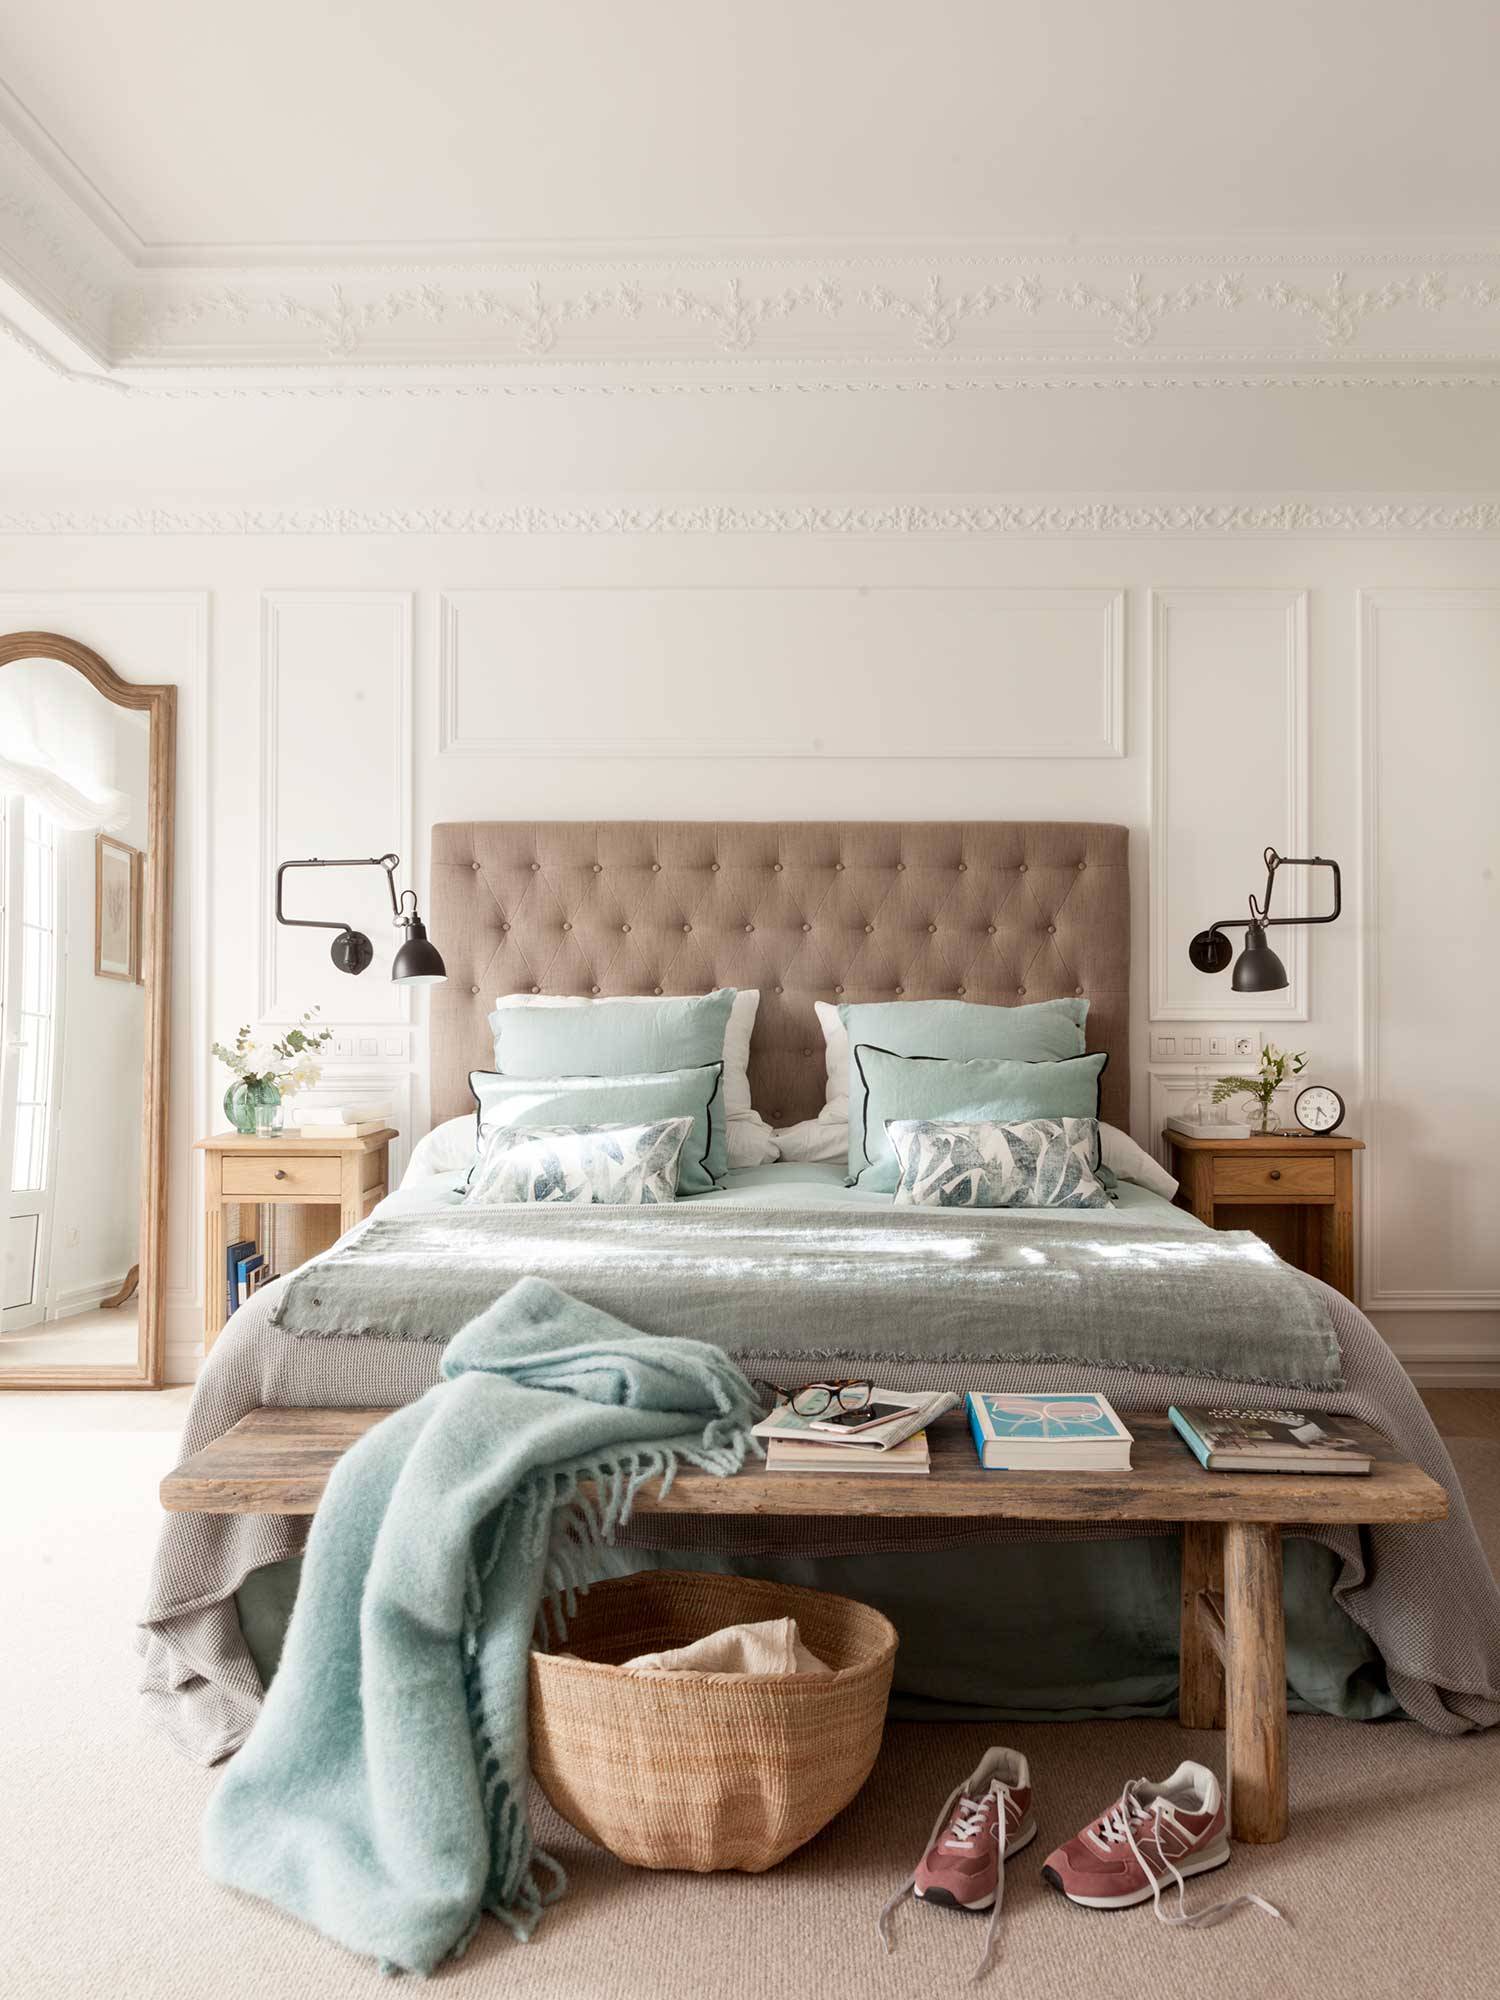 Dormitorio señorial con molduras y cabecero tapizado_00507001